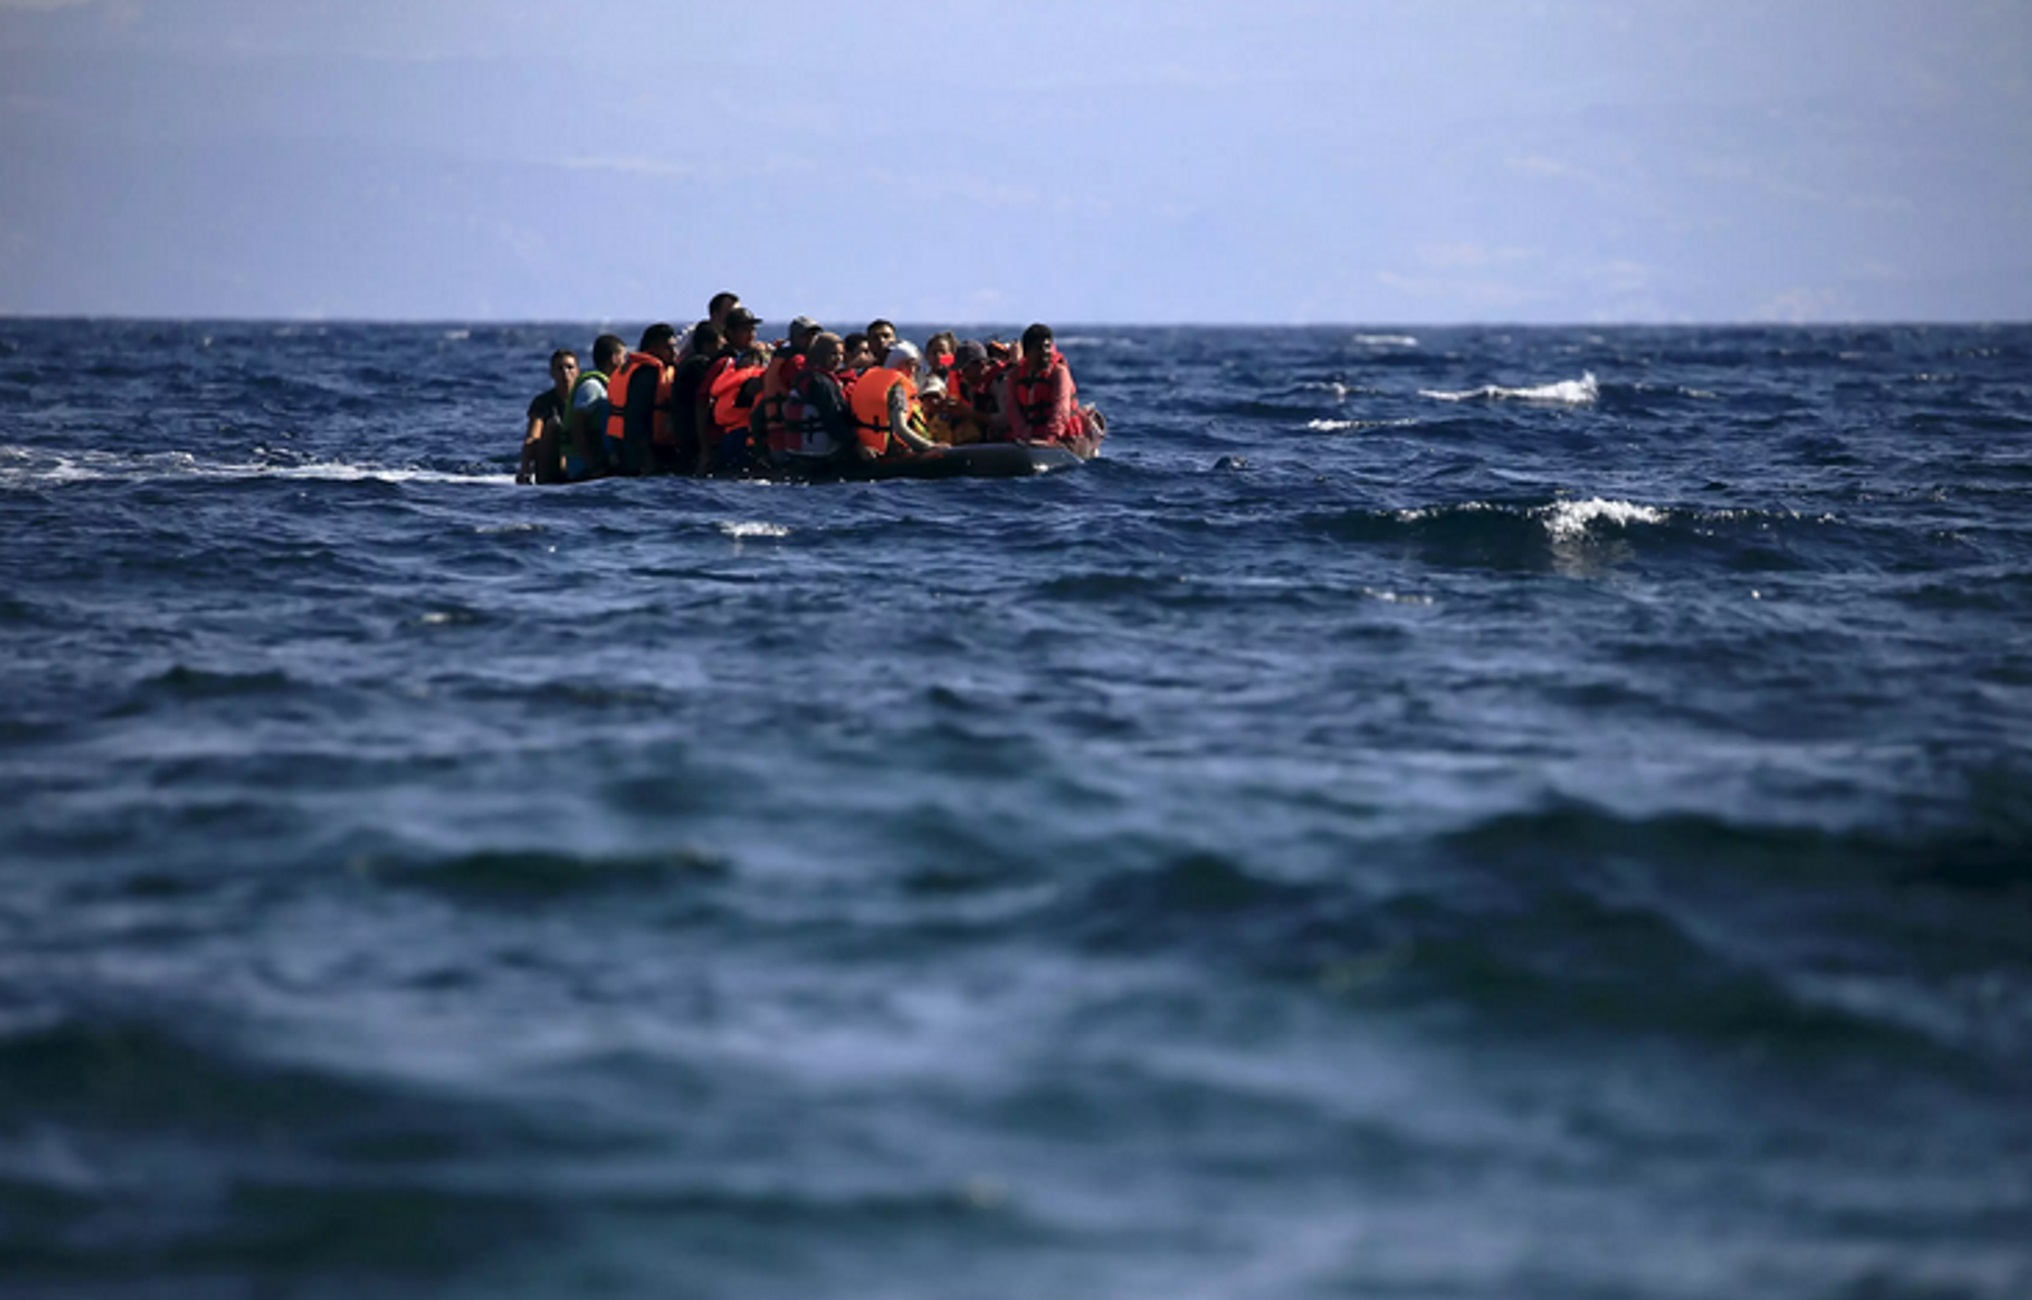 Ιταλία: Νέοι κανόνες για τις ΜΚΟ που ασχολούνται με τη διάσωση προσφύγων και μεταναστών